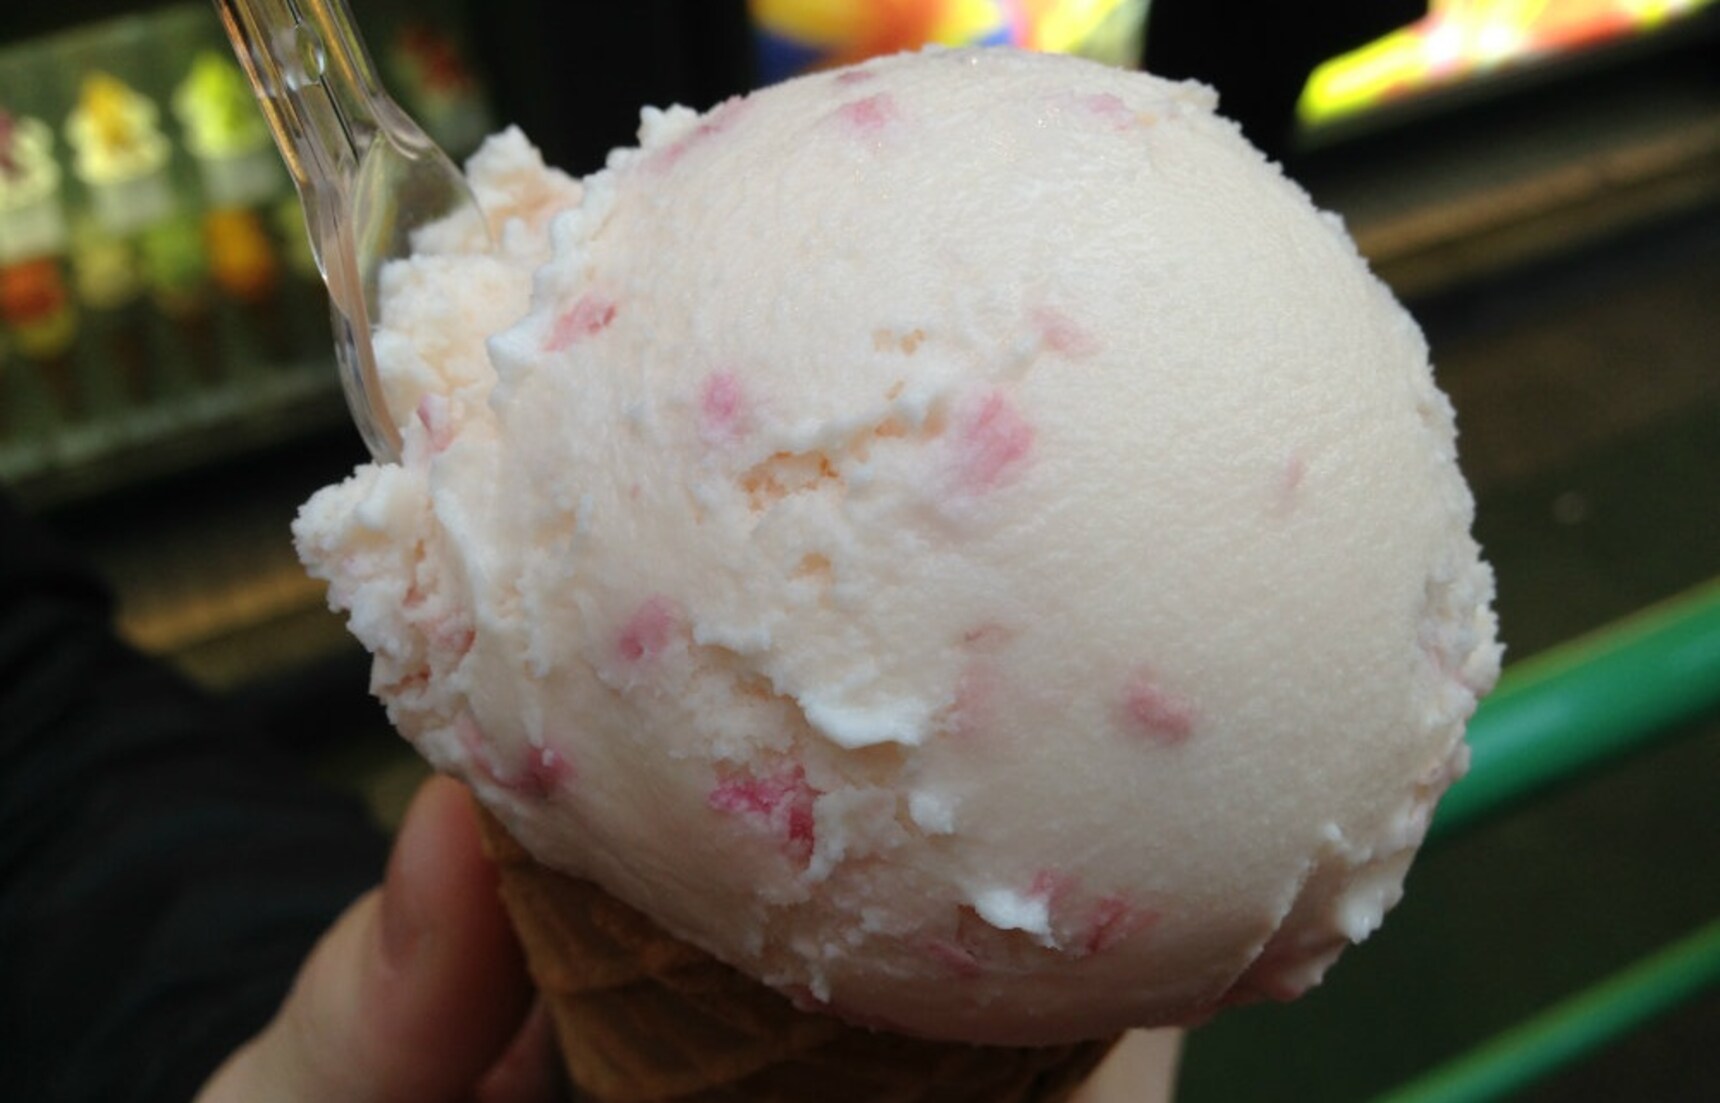 천연 벚꽃 아이스크림의 힘으로 올 봄도 화이팅!